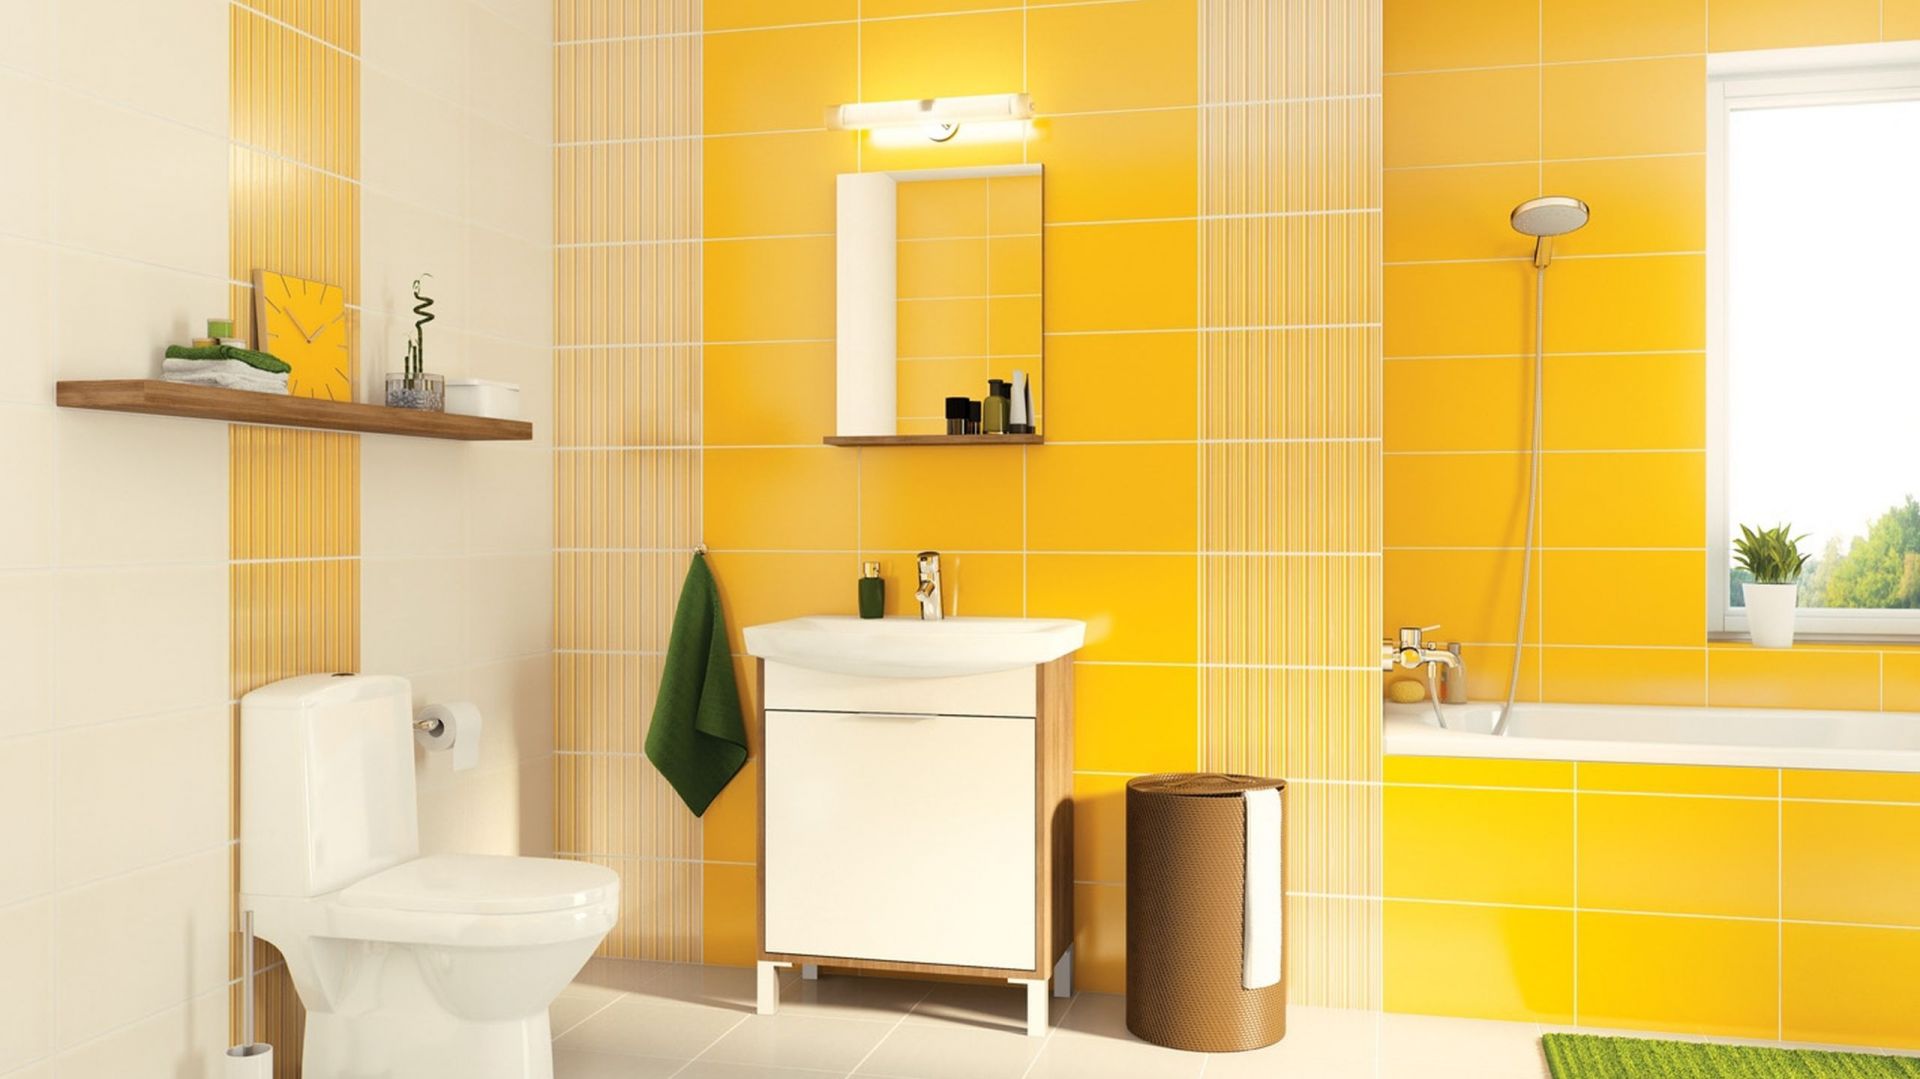 Zaproś słońce do łazienki – kolekcje płytek w odcieniach żółci i pomarańczu